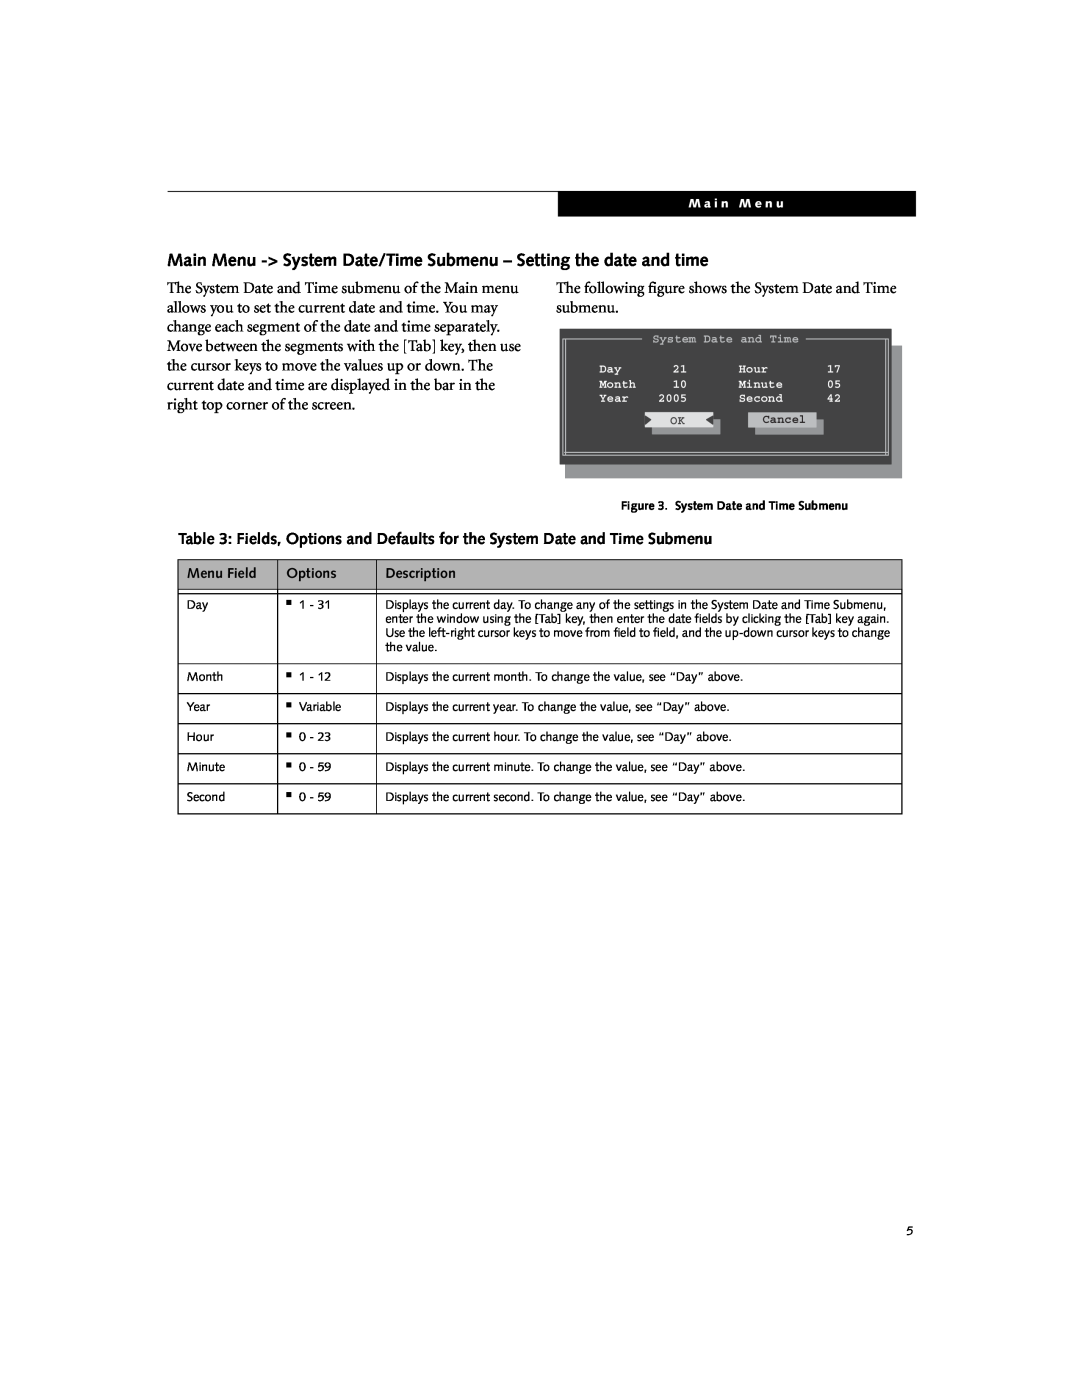 Fujitsu N6220 Main Menu - System Date/Time Submenu - Setting the date and time, submenu, Menu Field, Options, Description 